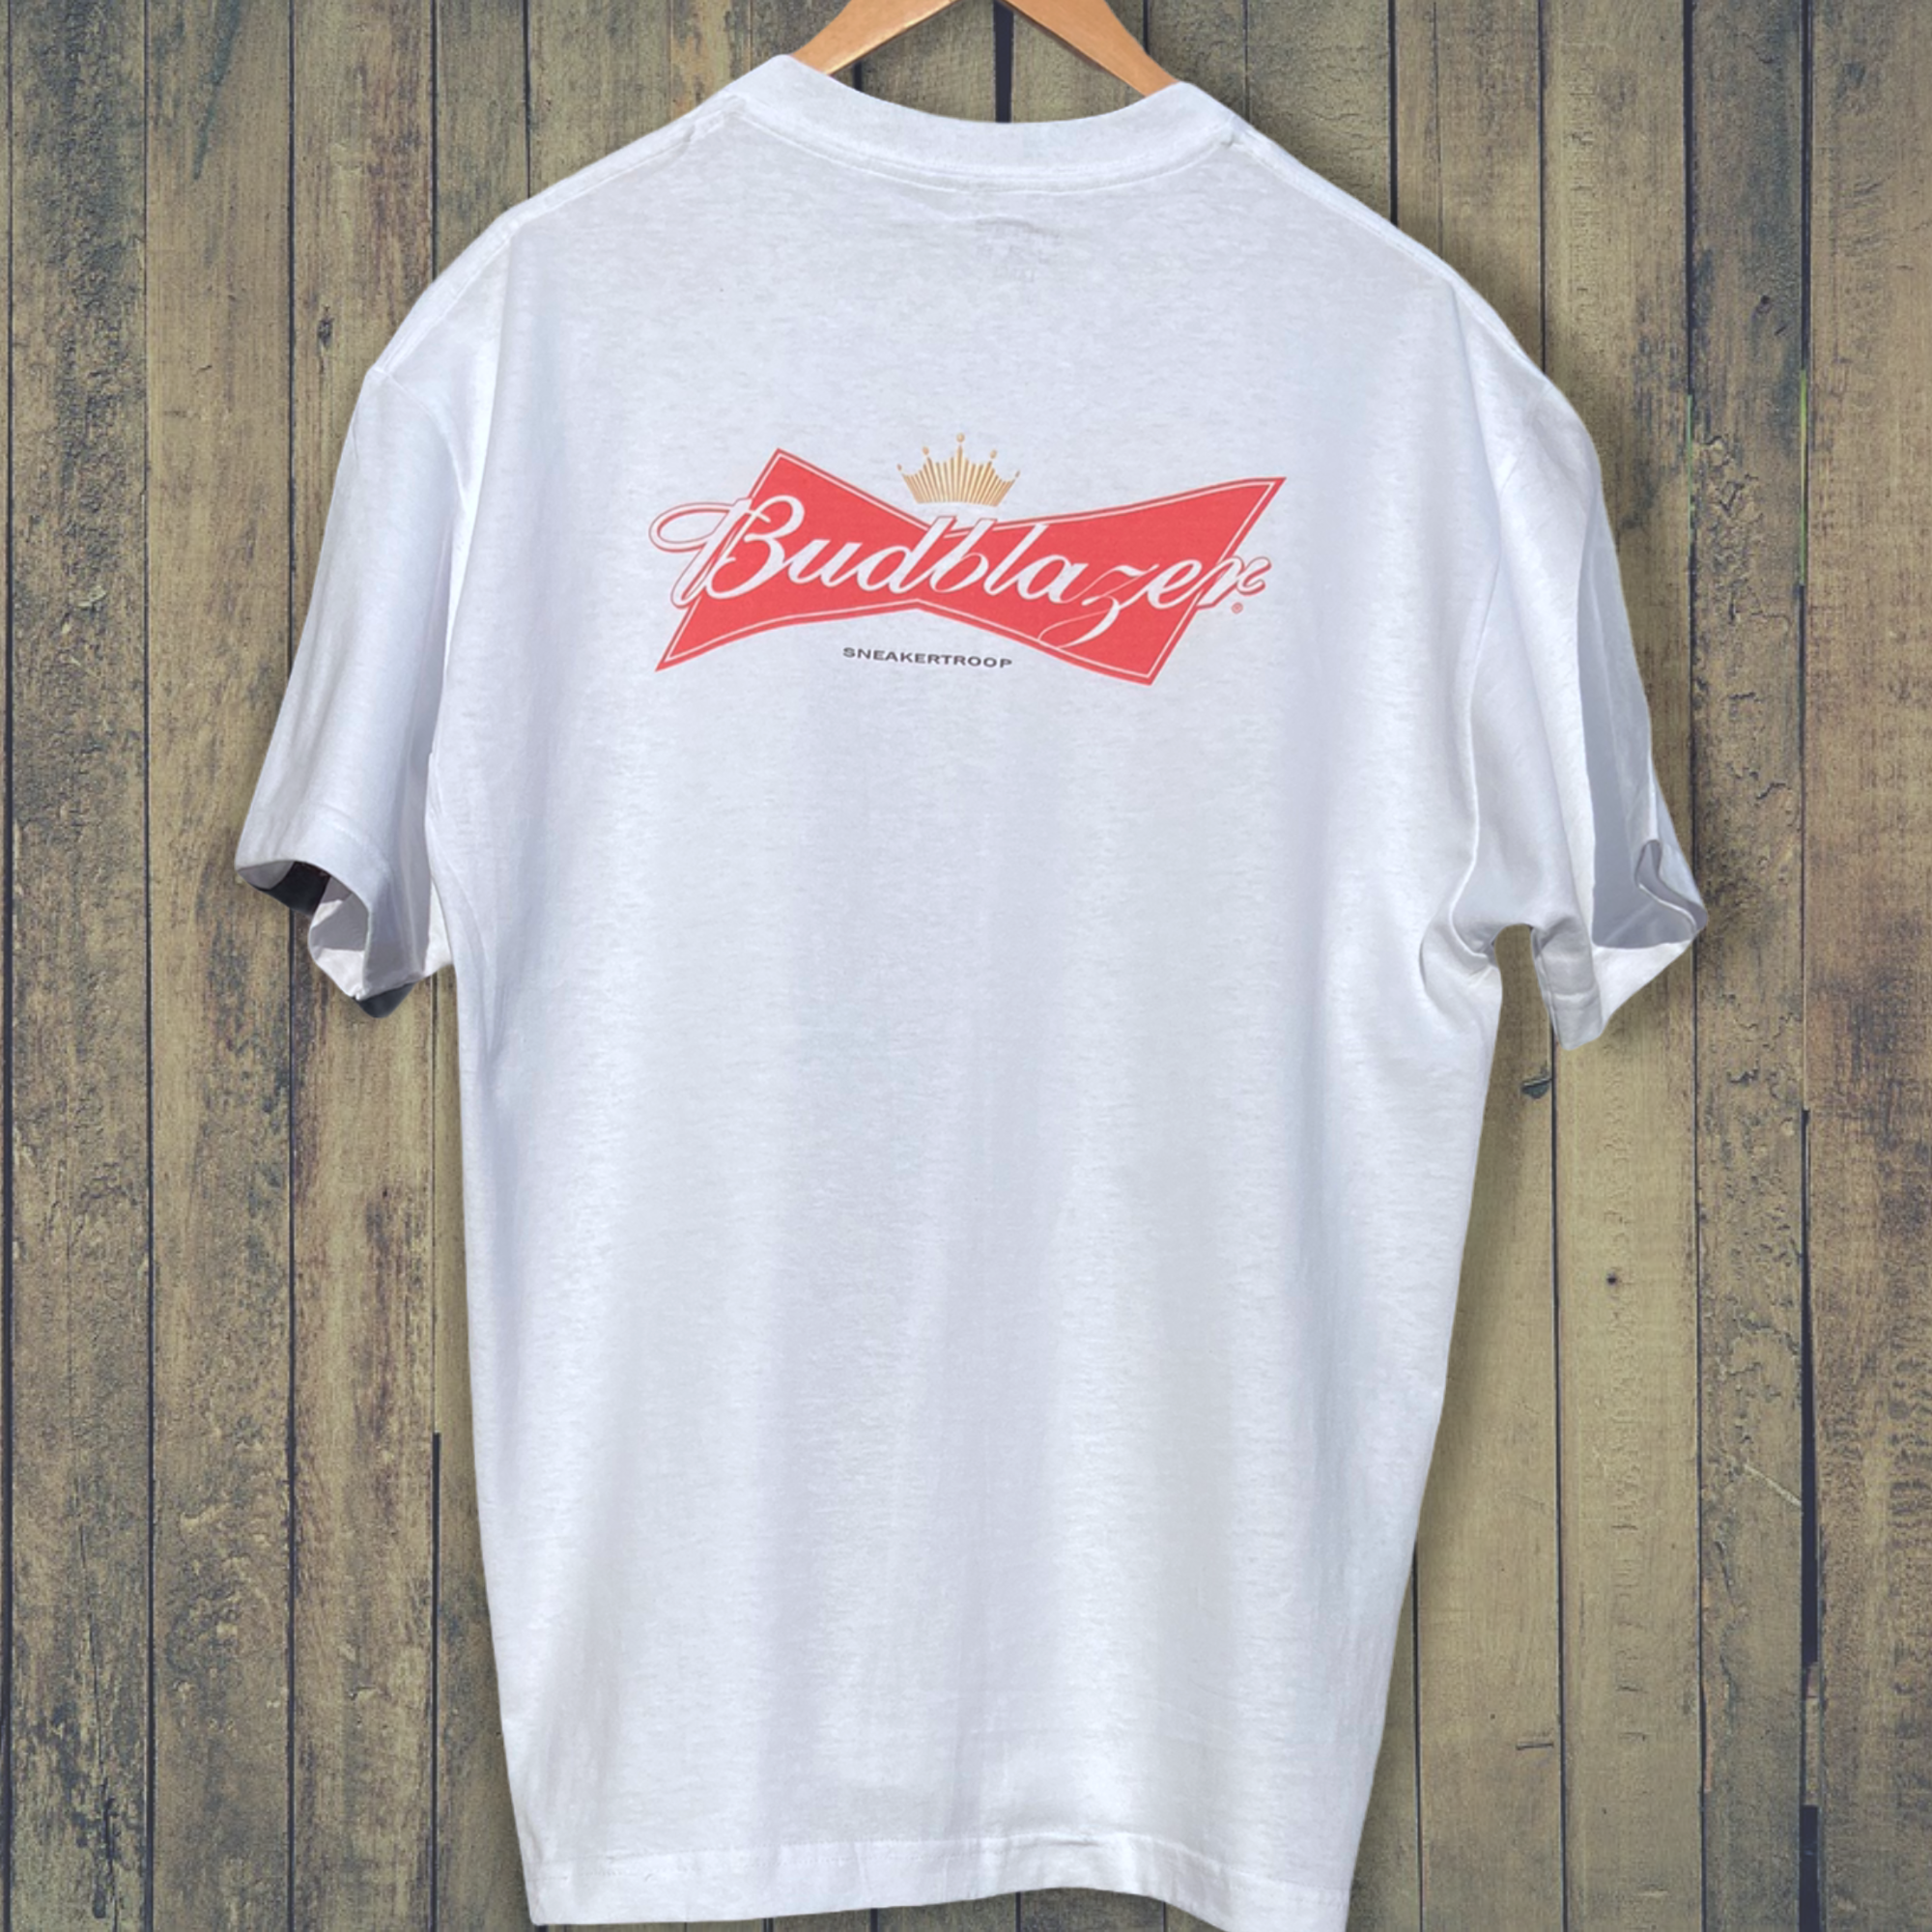 Sneakertroop Budblazer T-shirt - White